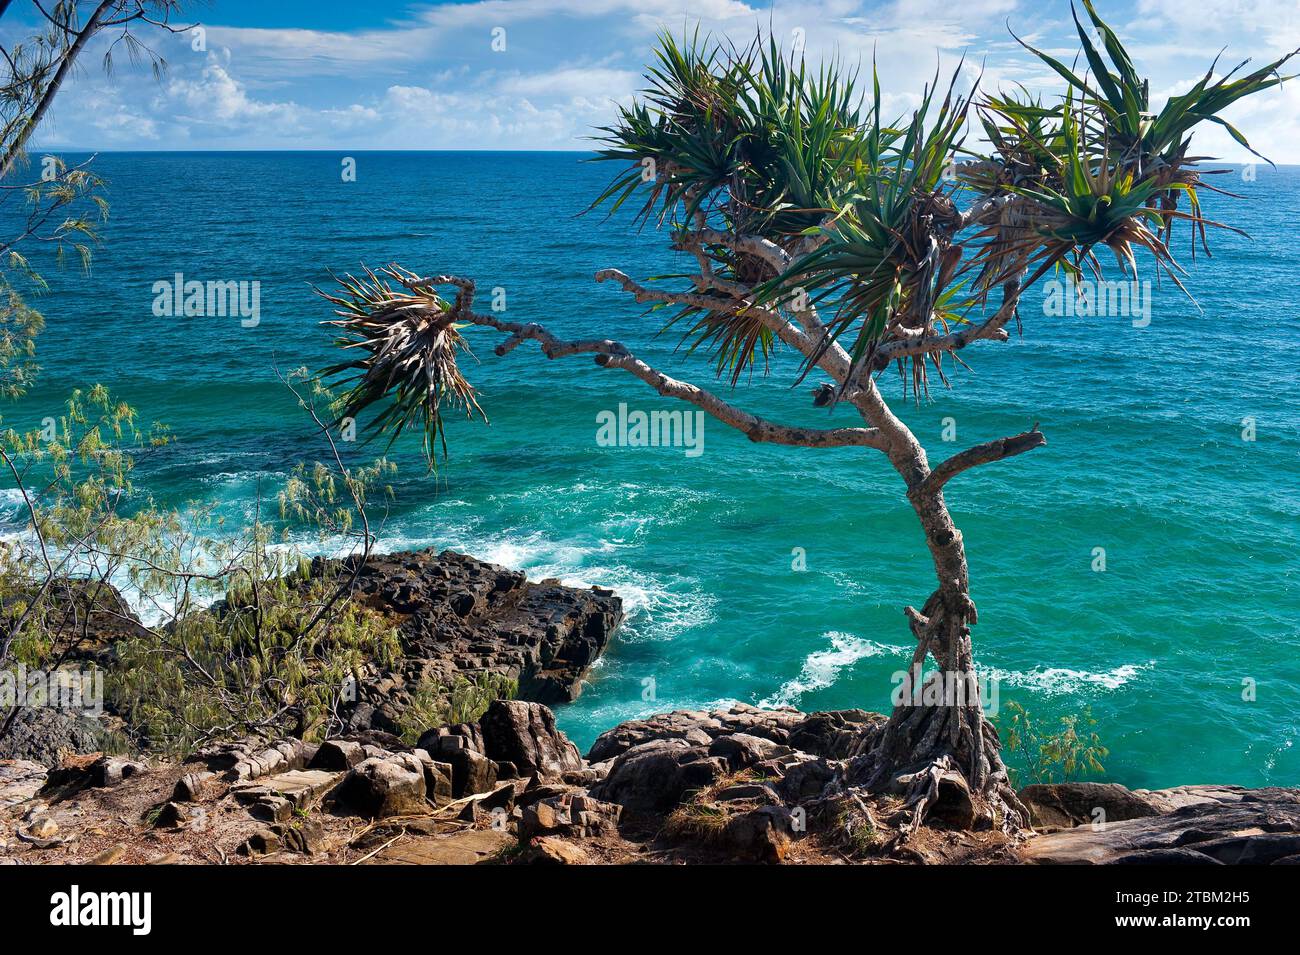 La passeggiata costiera di Noosa si dirige verso l'albero di mangrovie, vacanze, viaggi, costa, oceano, mare, costa orientale, Queensland, Australia Foto Stock